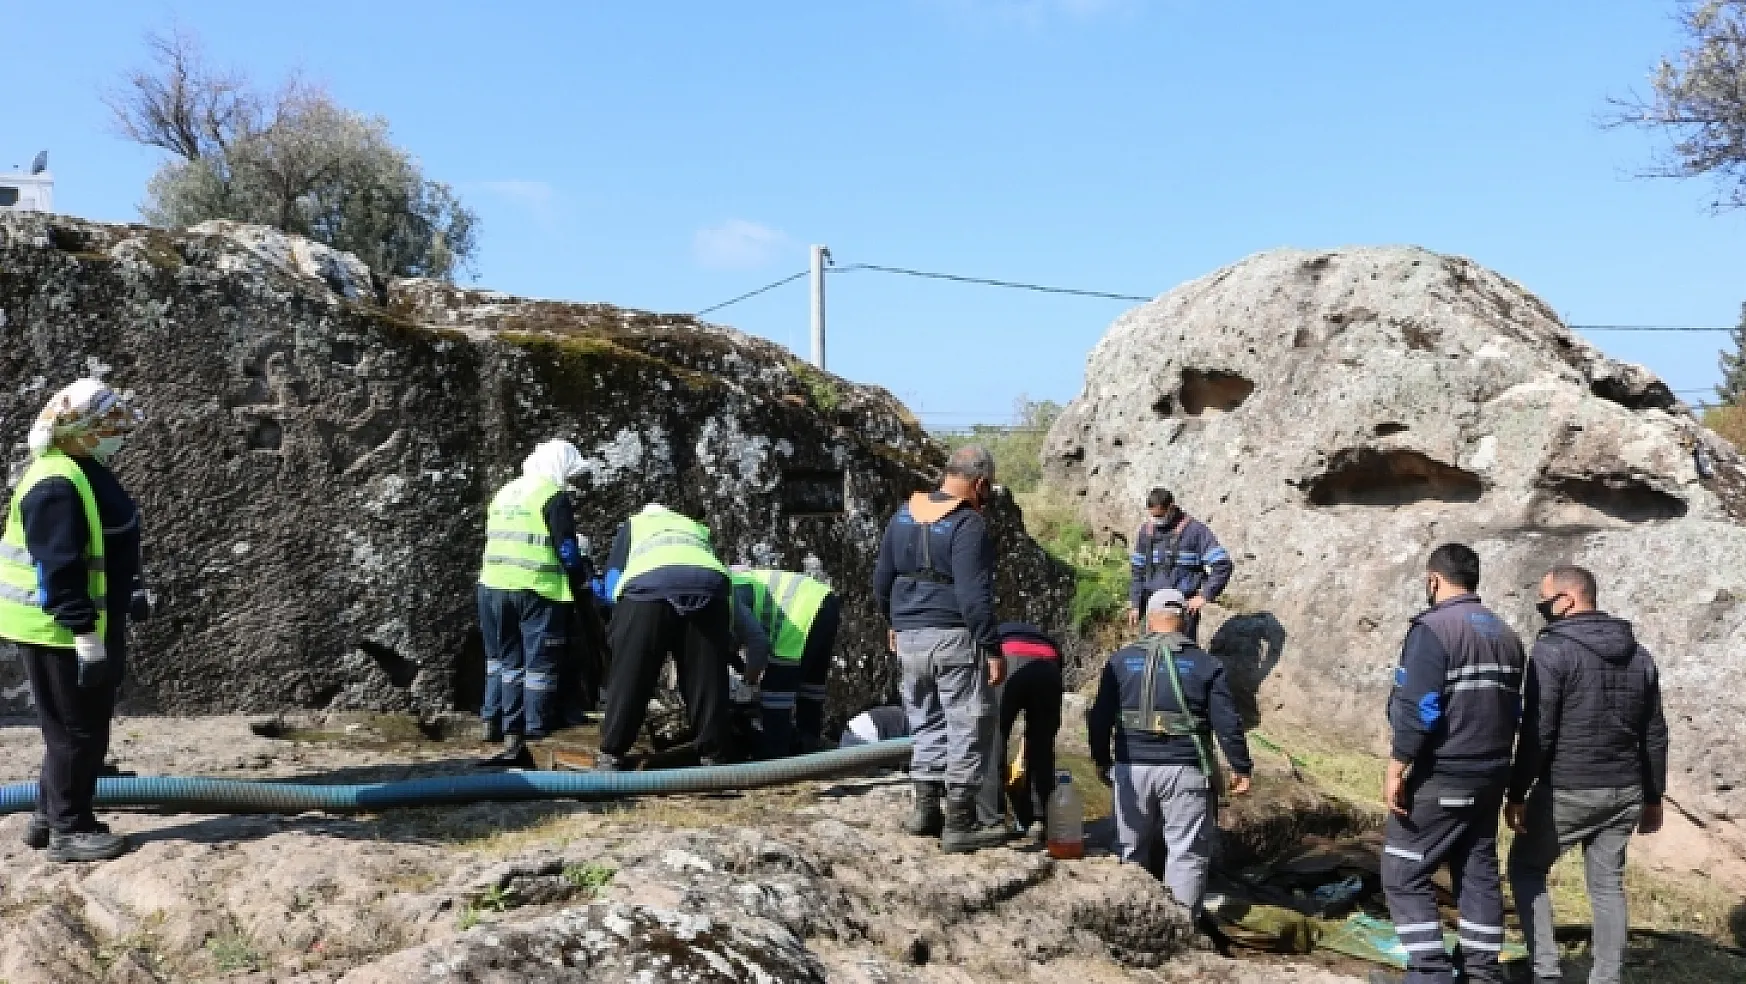 Roma Dönemine ait kaya mezarları Bodrum turizmine kazandırılacak